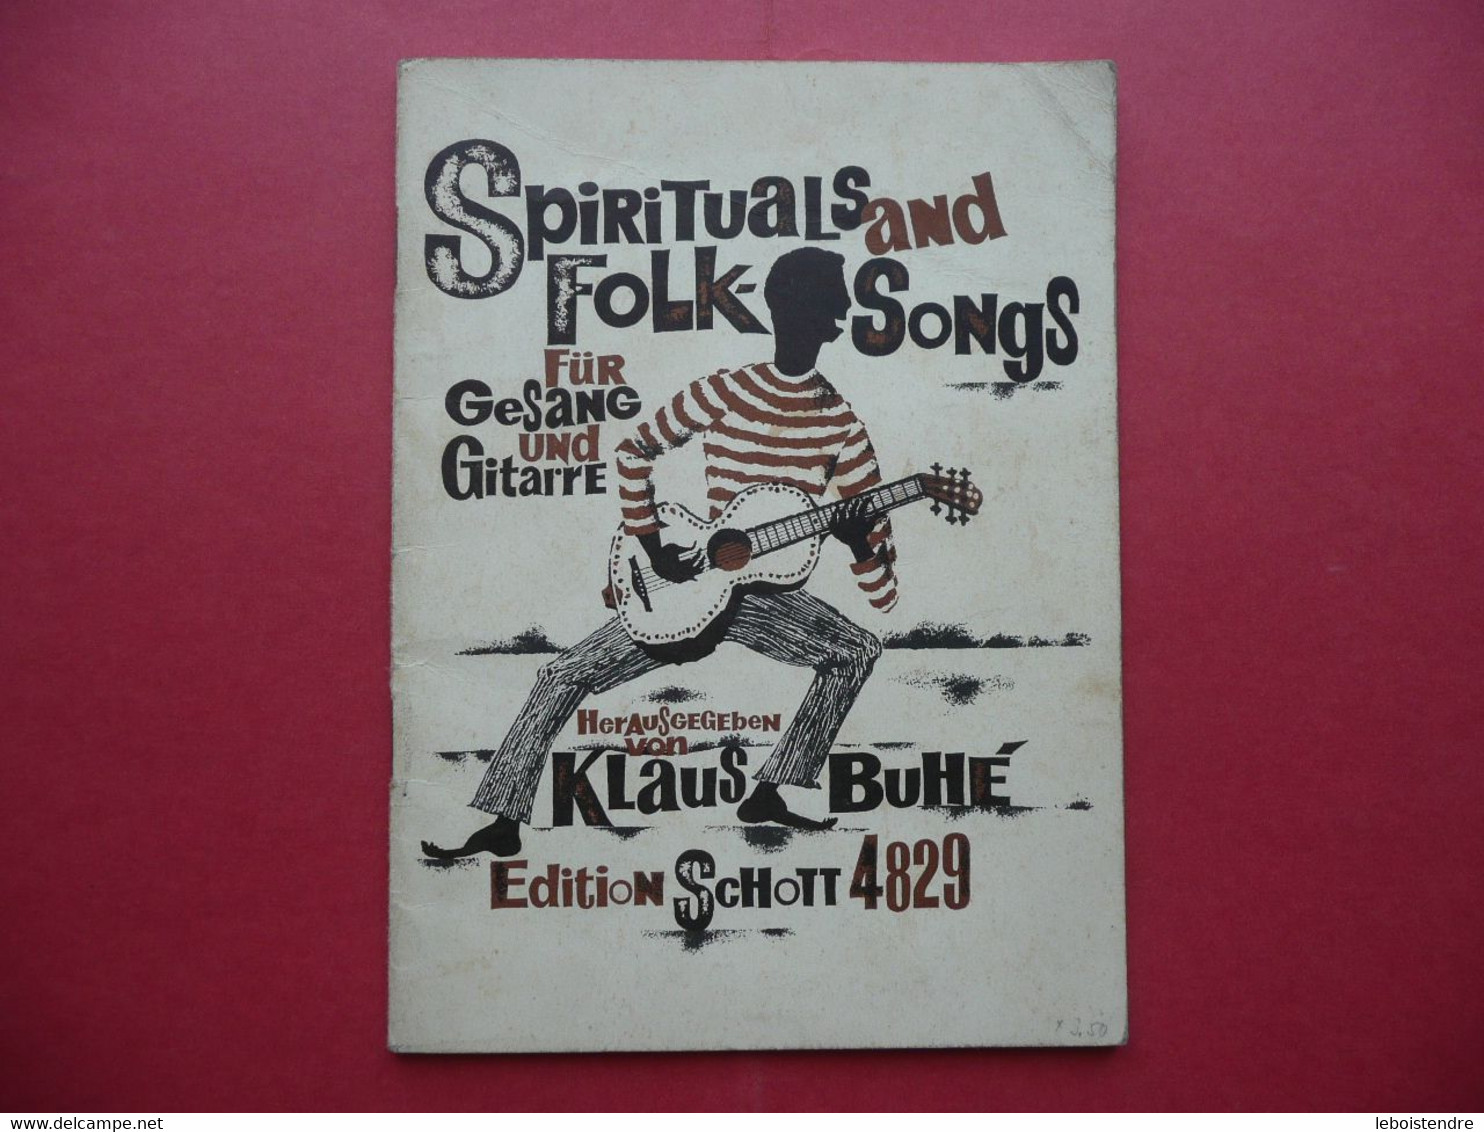 SPIRITUALS AND FOLK SONGS FUR GESANG UND GUITARRE HERAUSGEGEBEN VON KLAUS BUHE EDITION SCHOTT 4829 PARTITIONS - Music